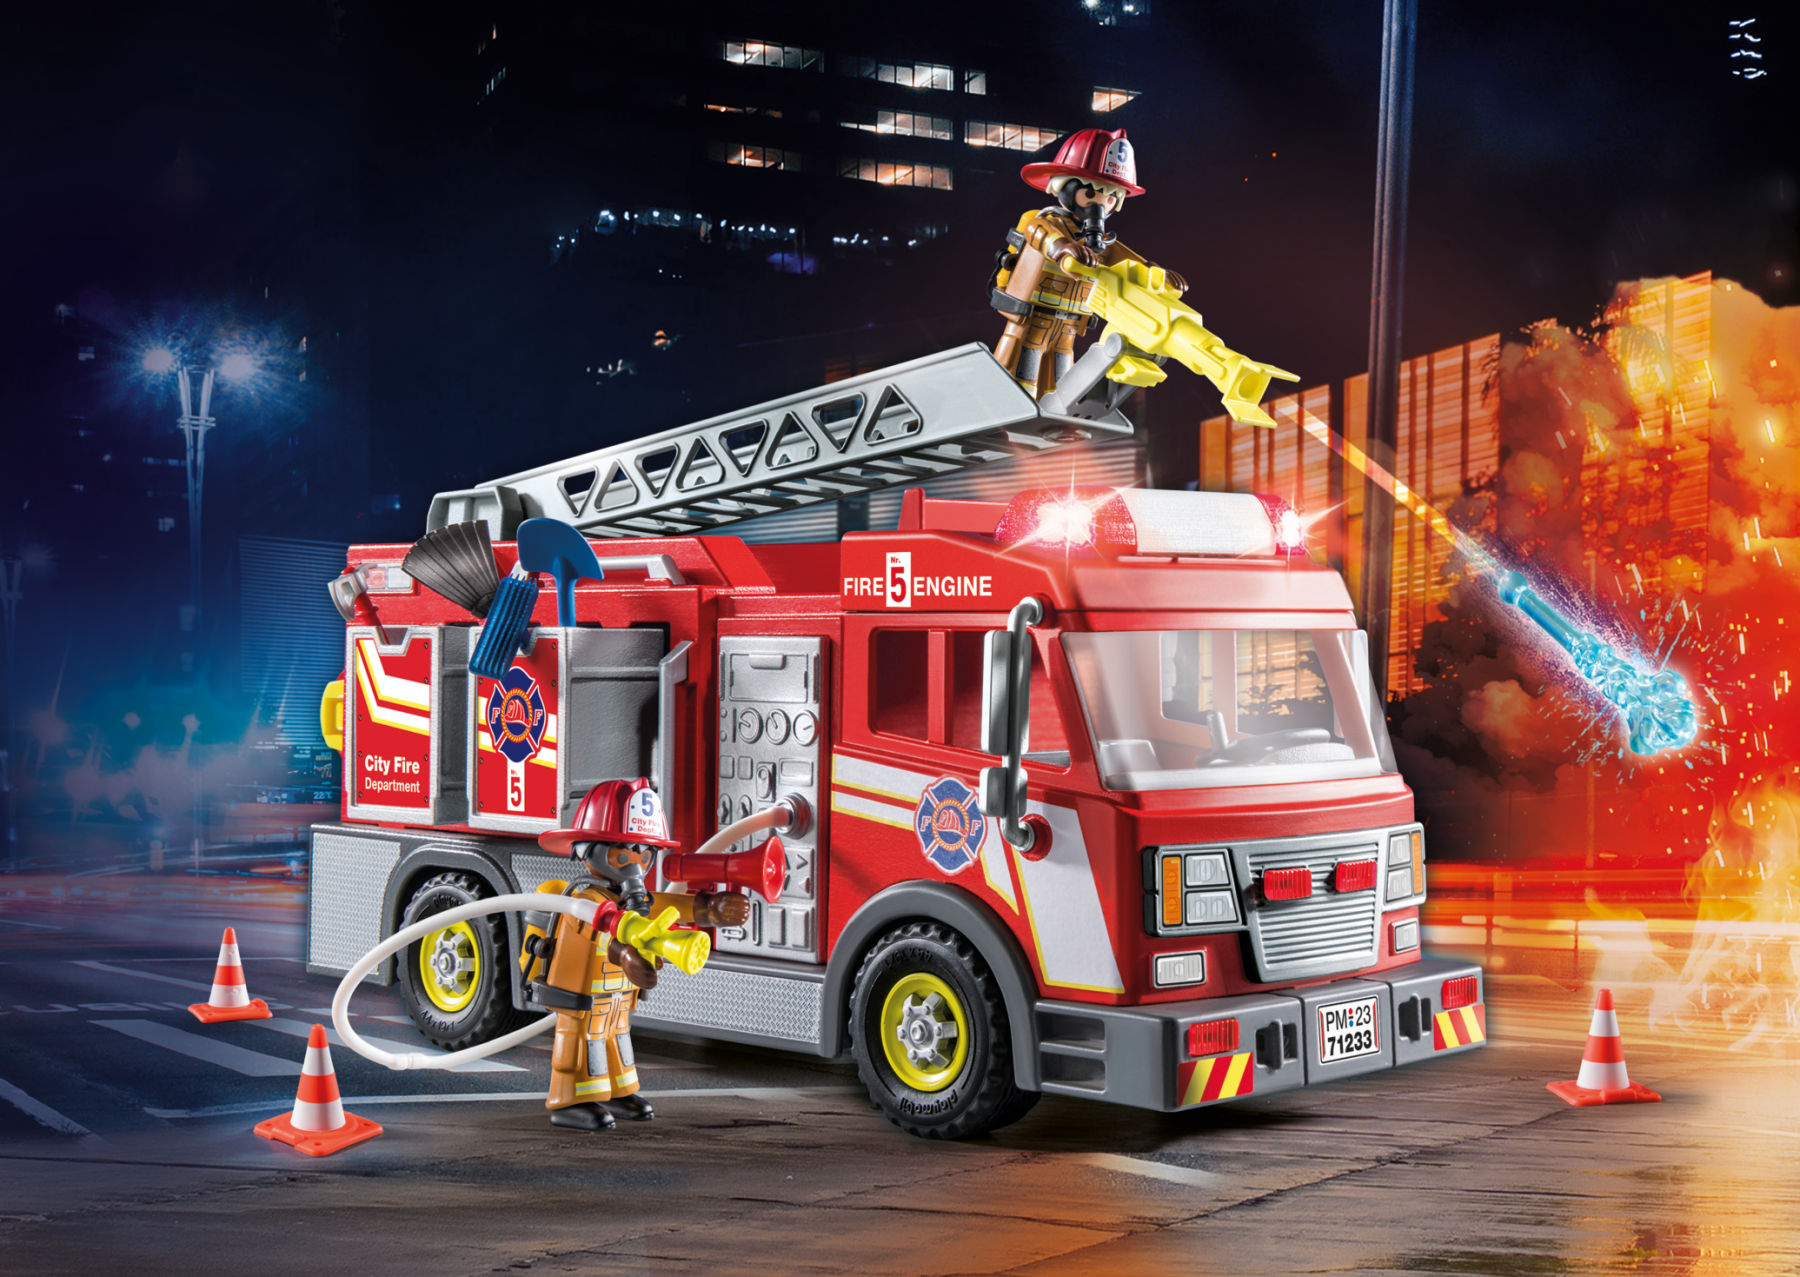 Playmobil 71233 camion dei vigili del fuoco con luci e suoni per bambini dai 4 anni - Playmobil